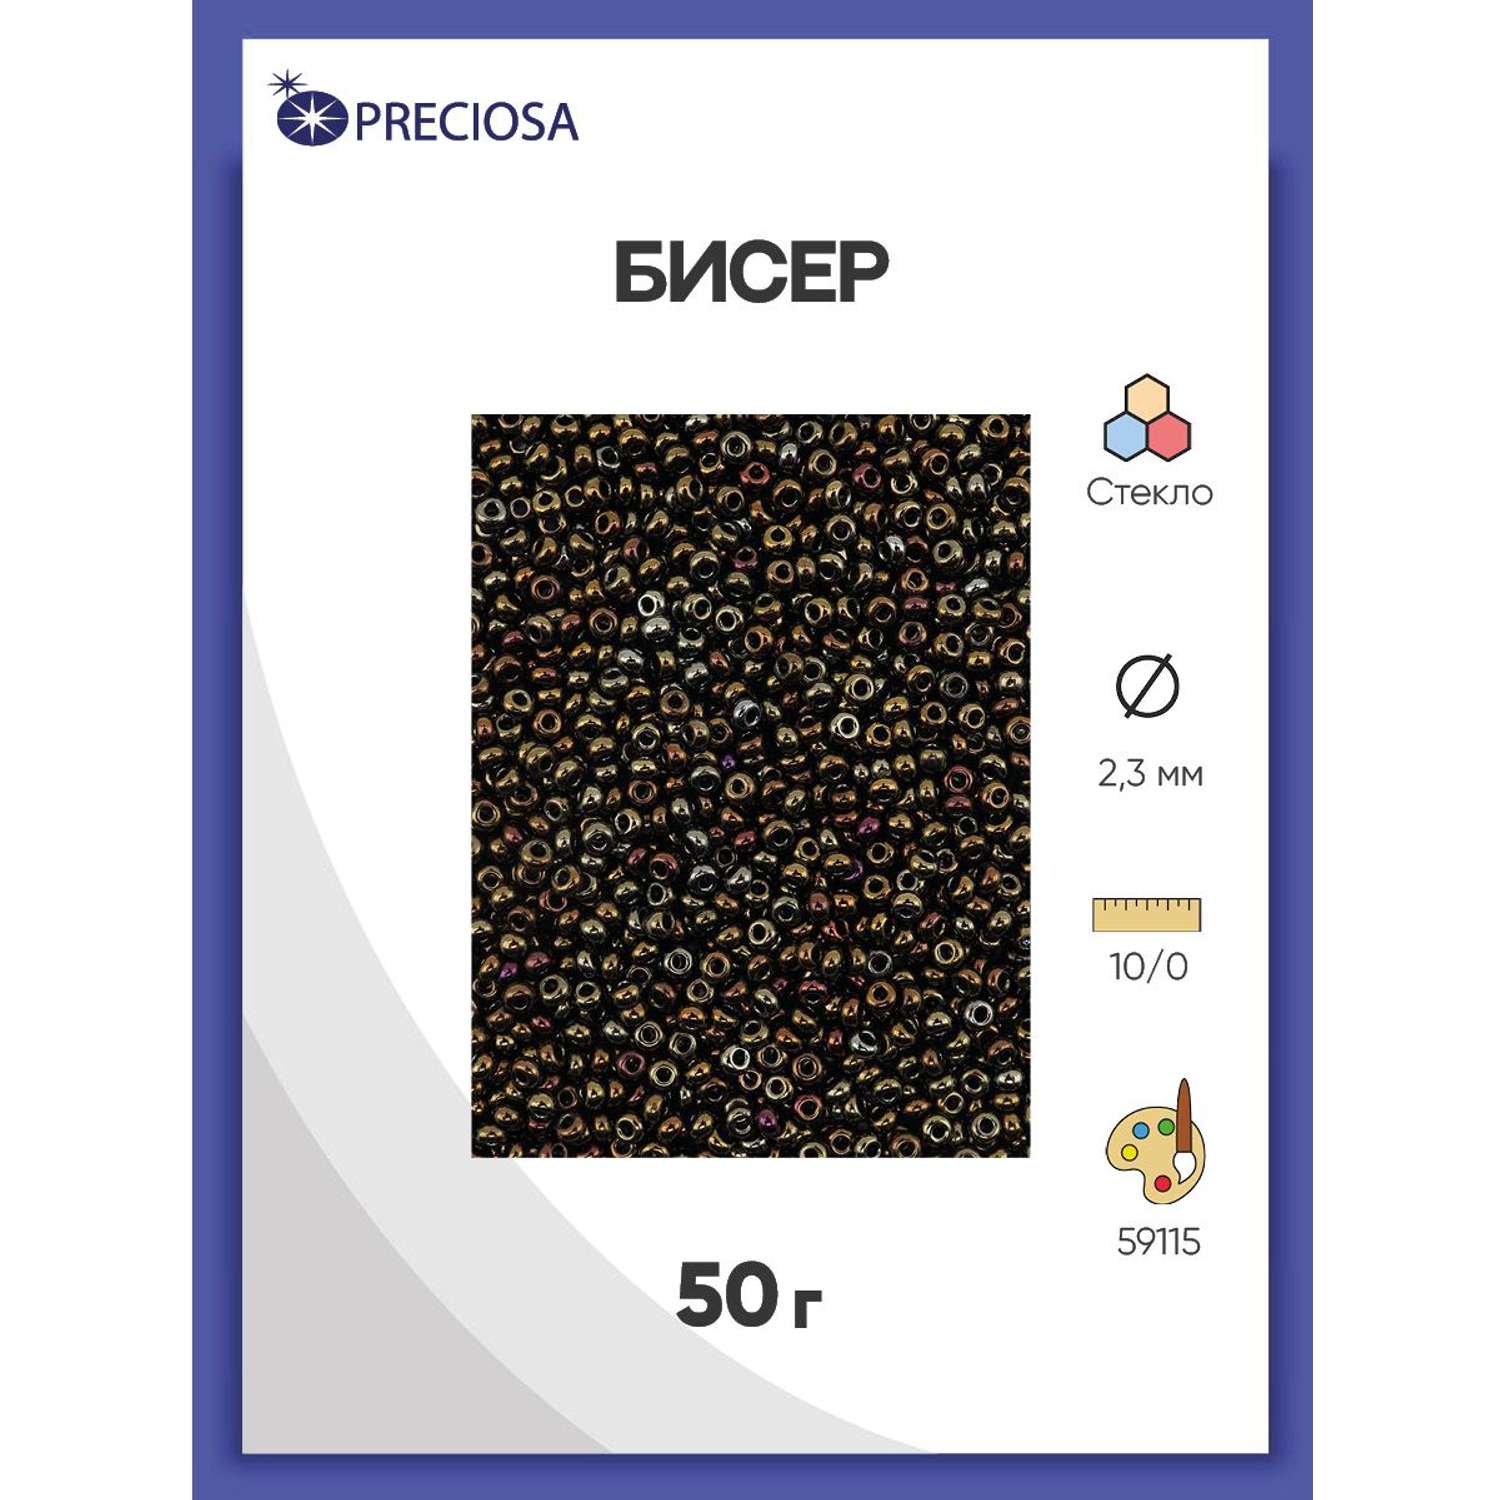 Бисер Preciosa чешский металлик 10/0 50 г Прециоза 59115 черный - фото 1